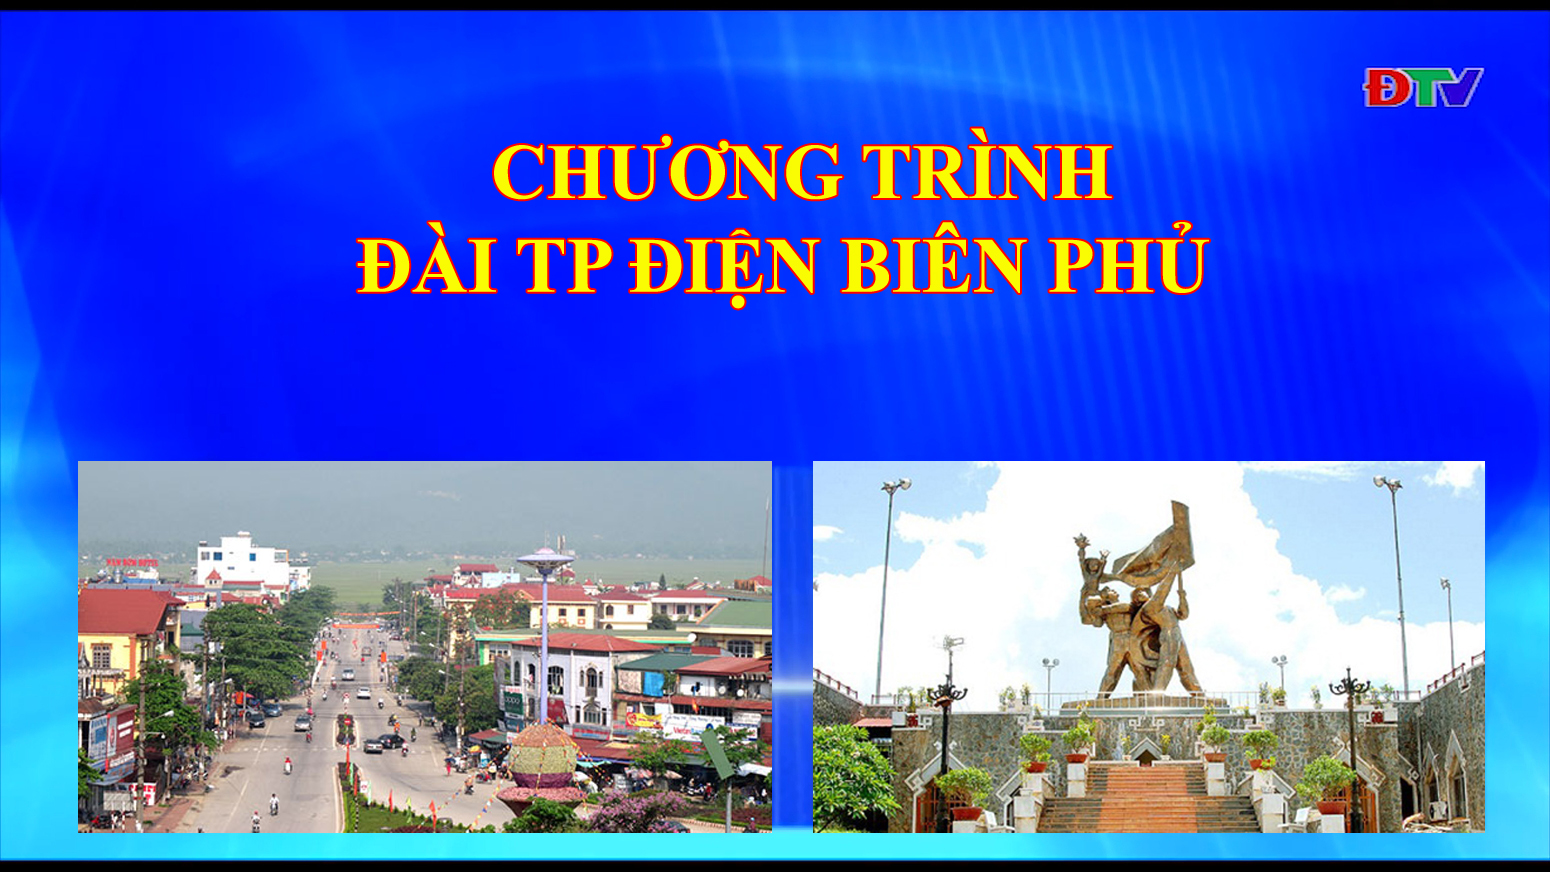 Đài thành phố Điện Biên Phủ (Ngày 21/01/2020)